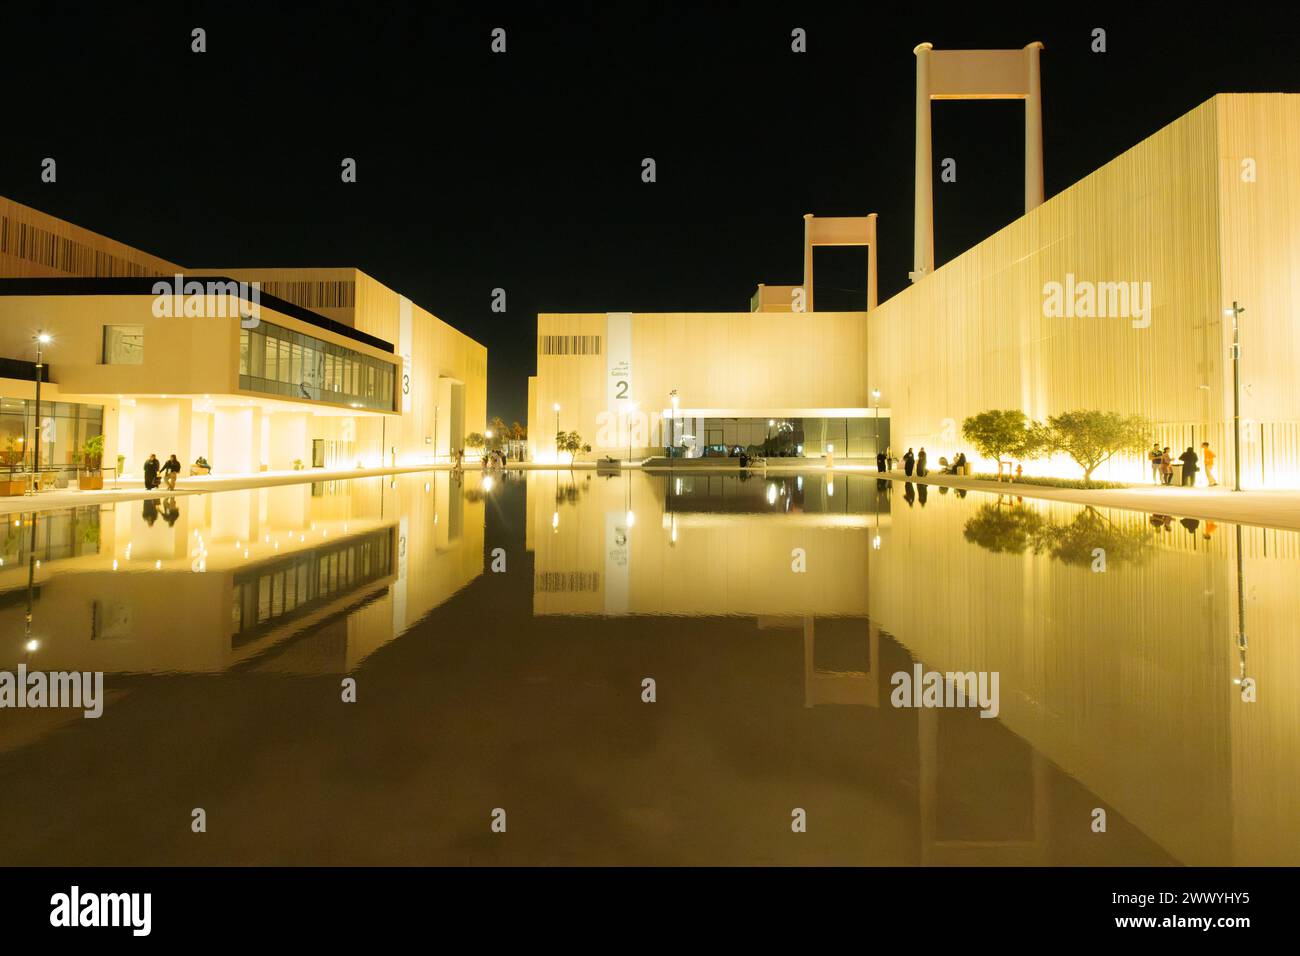 Vista nocturna de la brillante terminal occidental de hajj en jeddah durante la bienal de Artes islámicas, Arabia Saudita Foto de stock